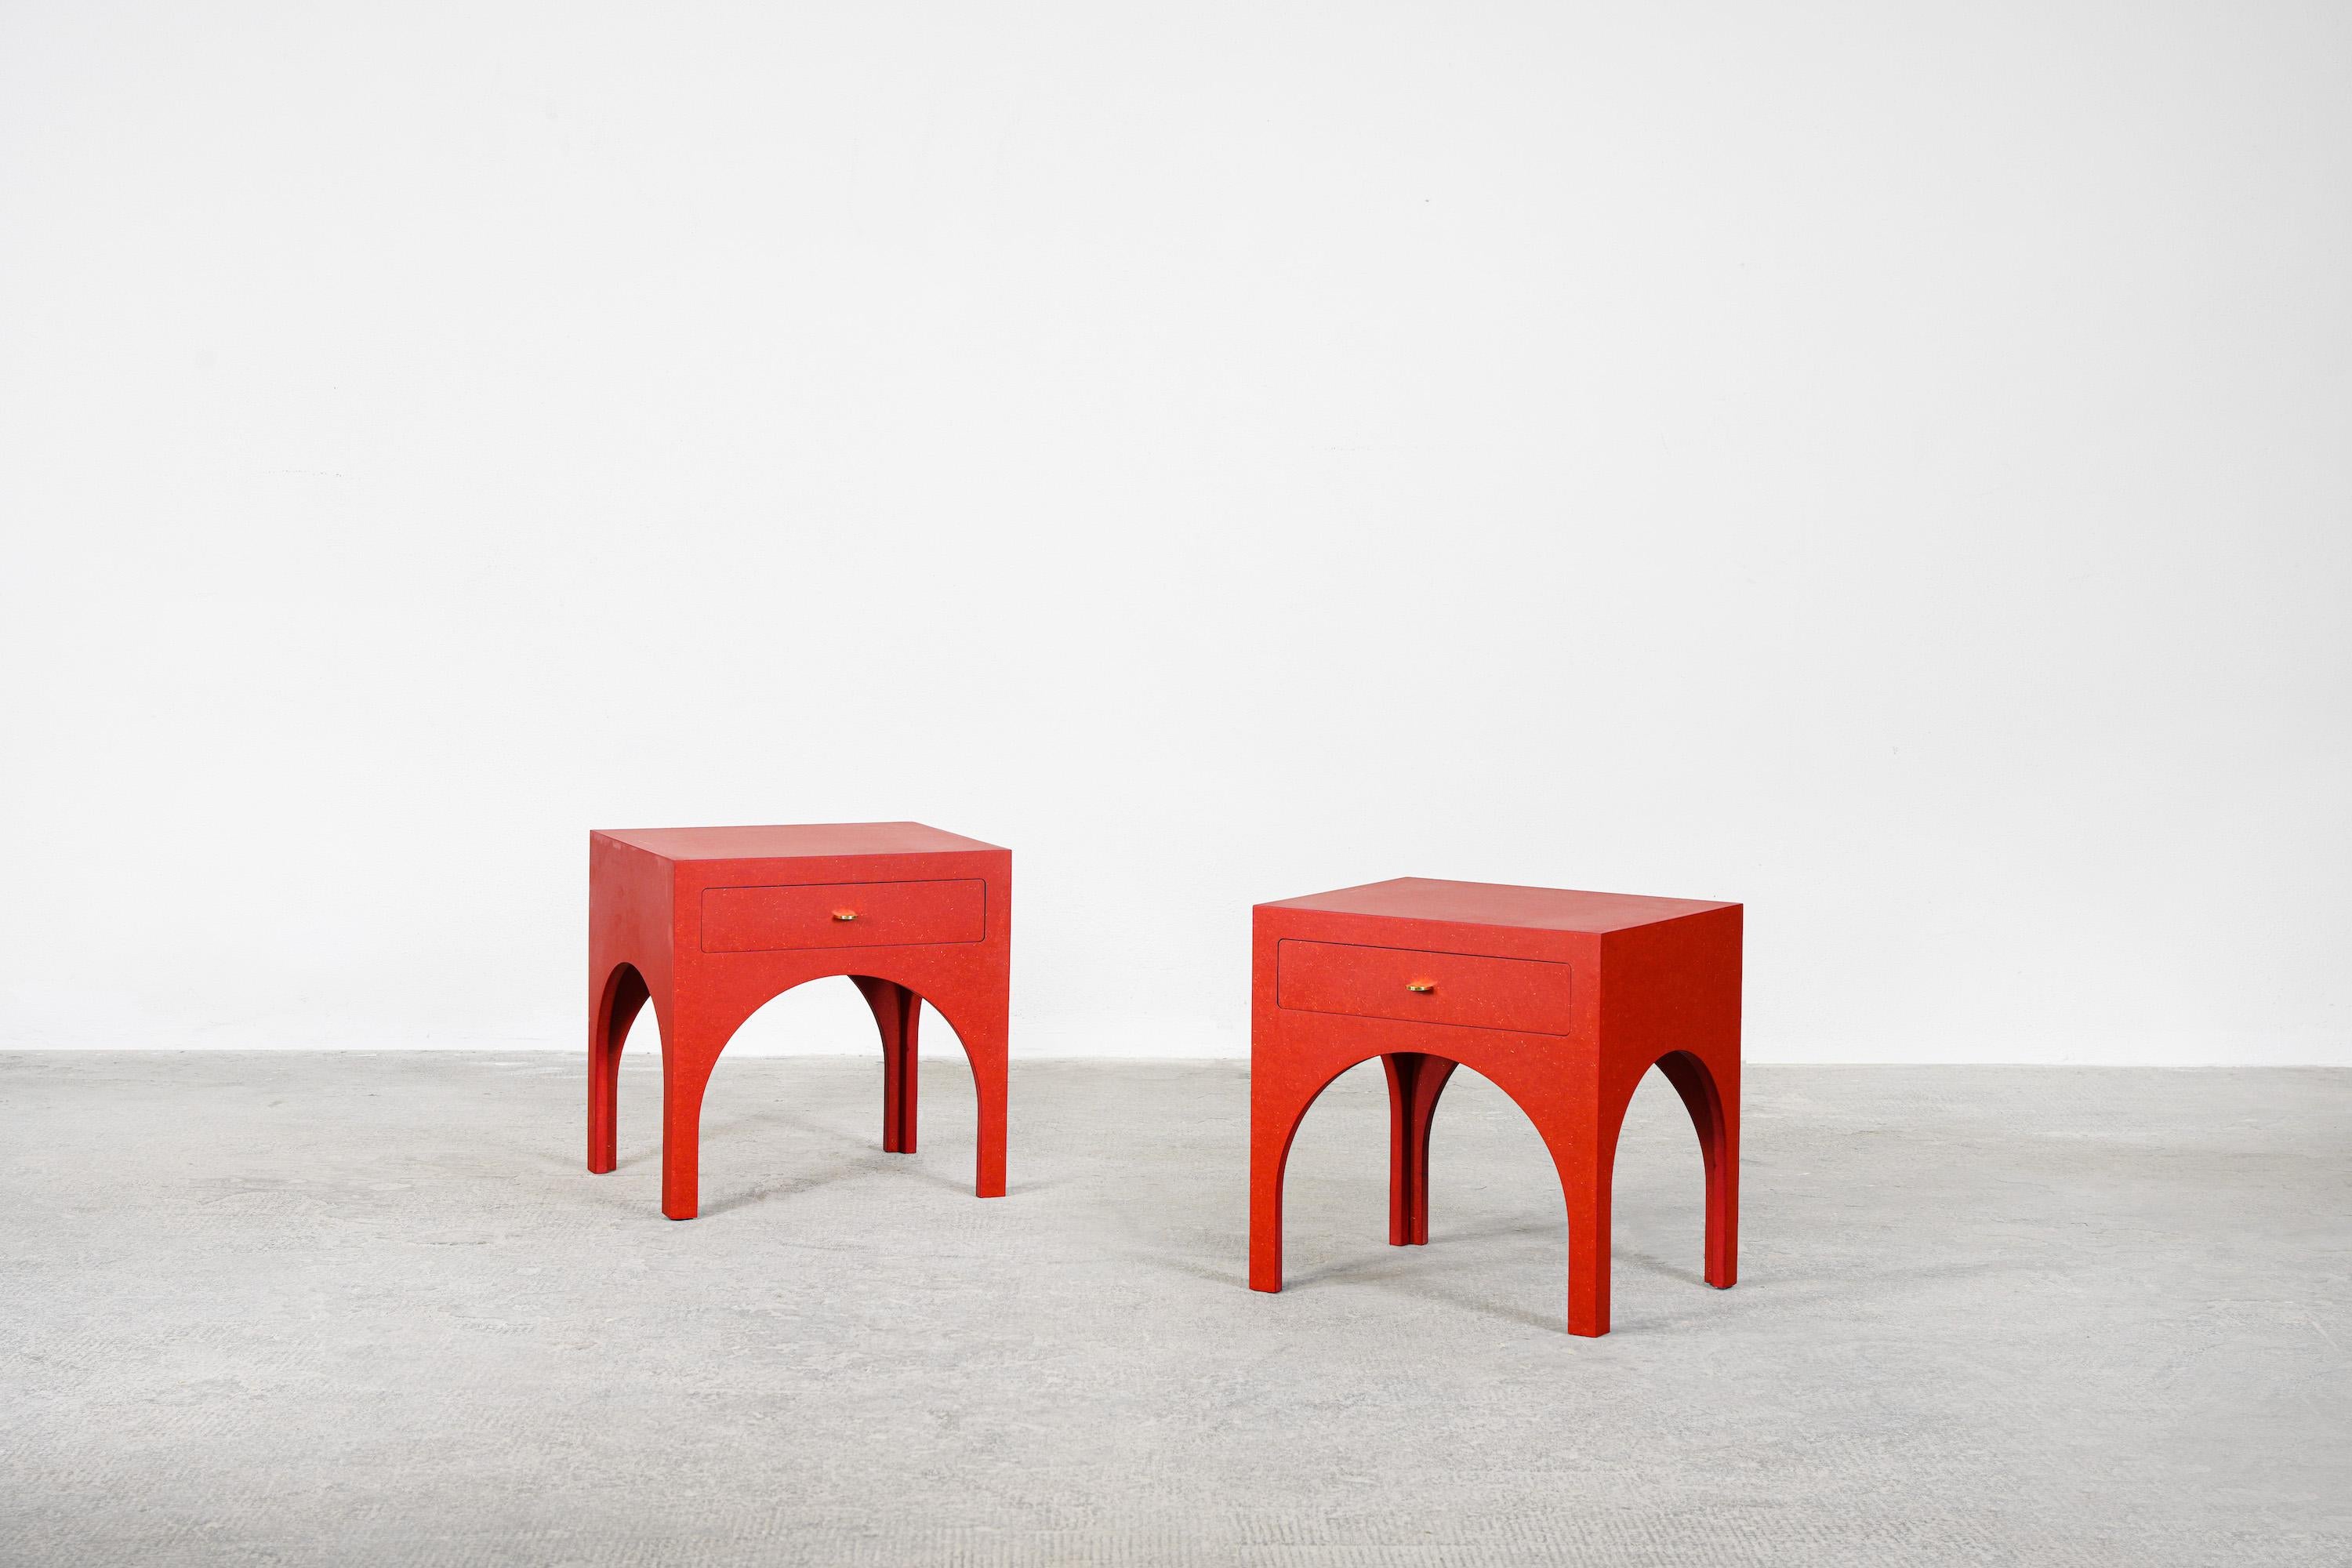 Ein schönes Paar rote Beistelltische/Nachttische, entworfen von Yuzo Bachmann für Atelier Bachmann, handgefertigt in Deutschland, 2019.
Diese Nachttische sind aus rotem Valchromat und polierten Messinggriffen gefertigt. Mit natürlichem Möbelwachs